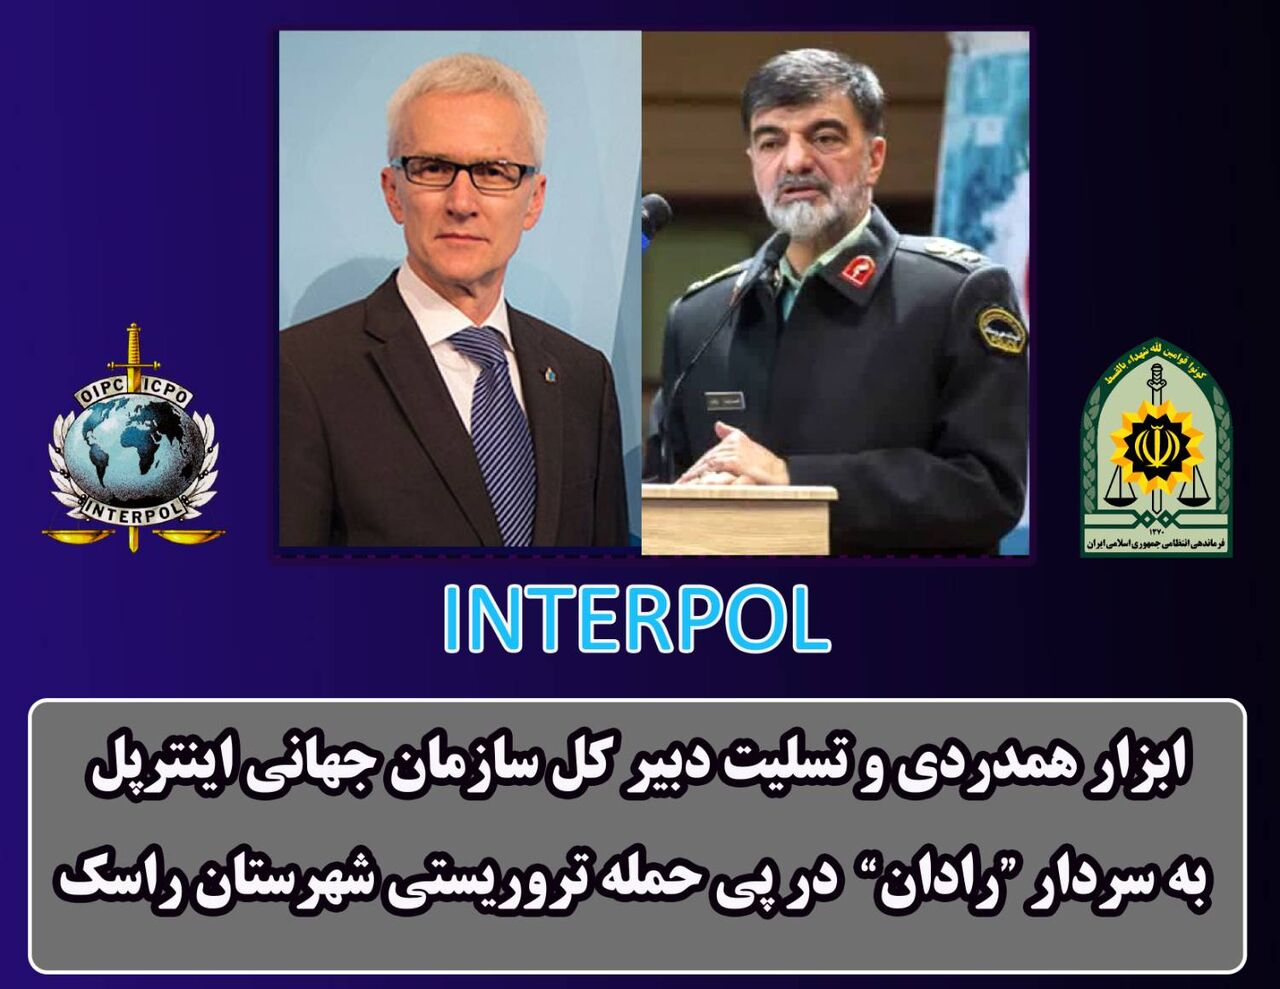 الامين العام للشرطة الدولية يدين الهجوم الارهابي في مدينة راسك الايرانية